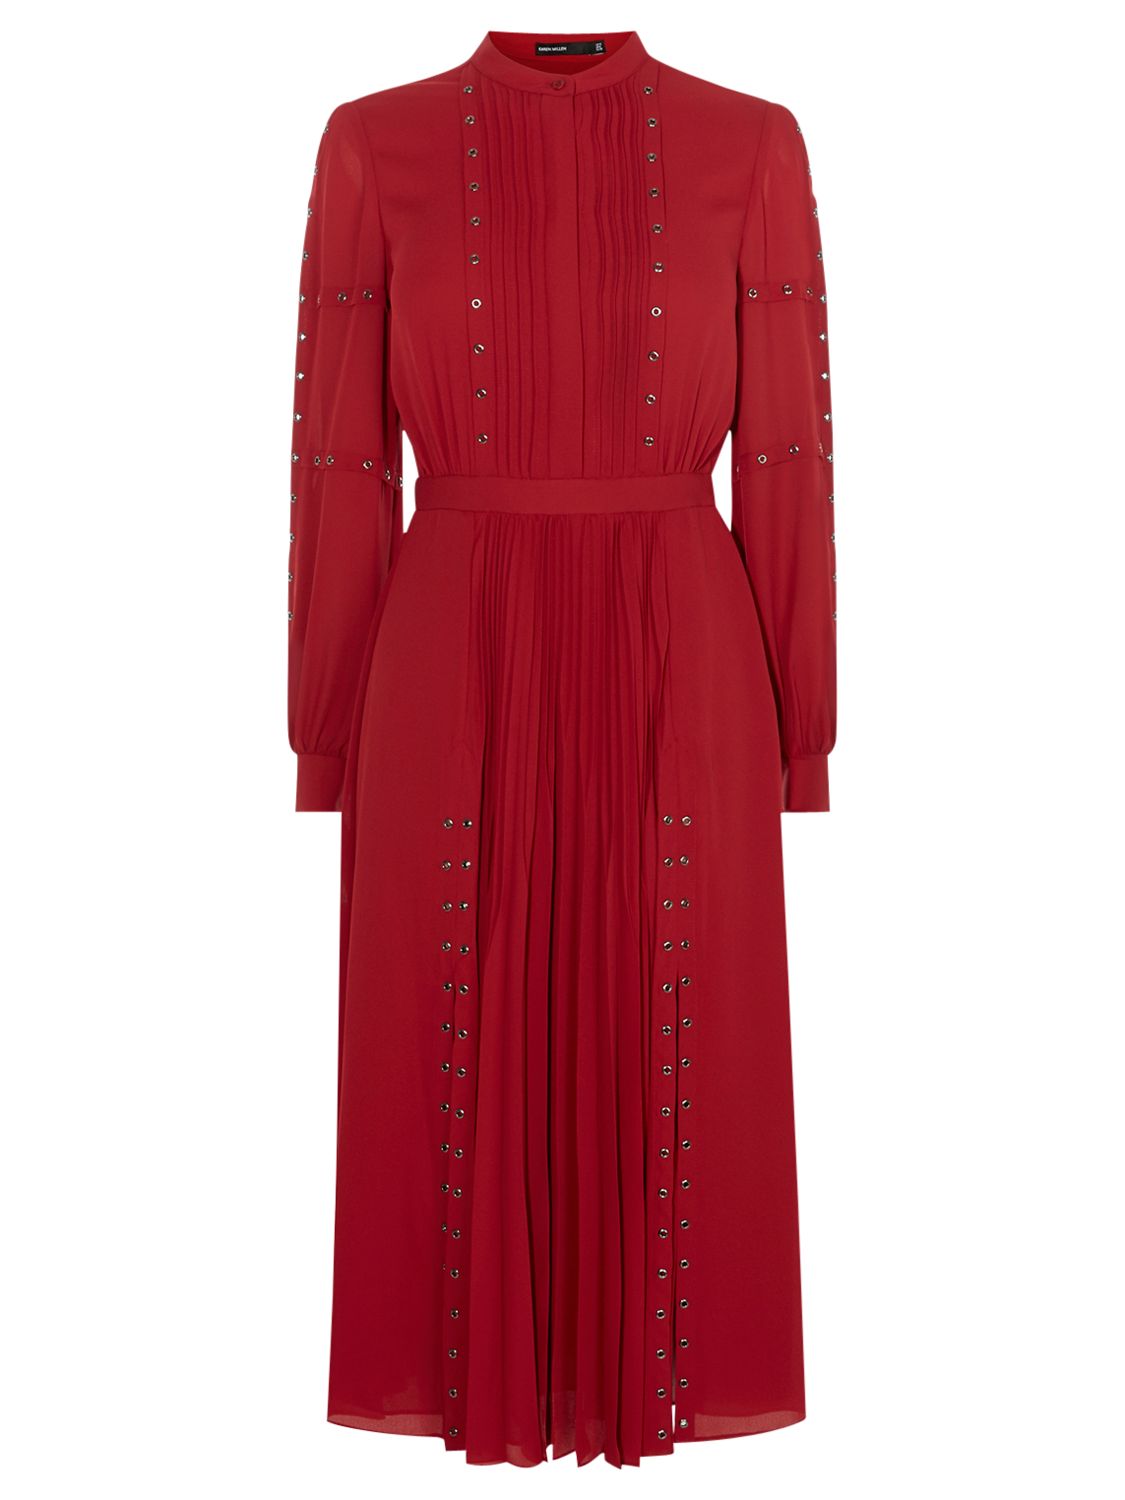 Karen Millen Fashion Eyelet Dress, Dark Red